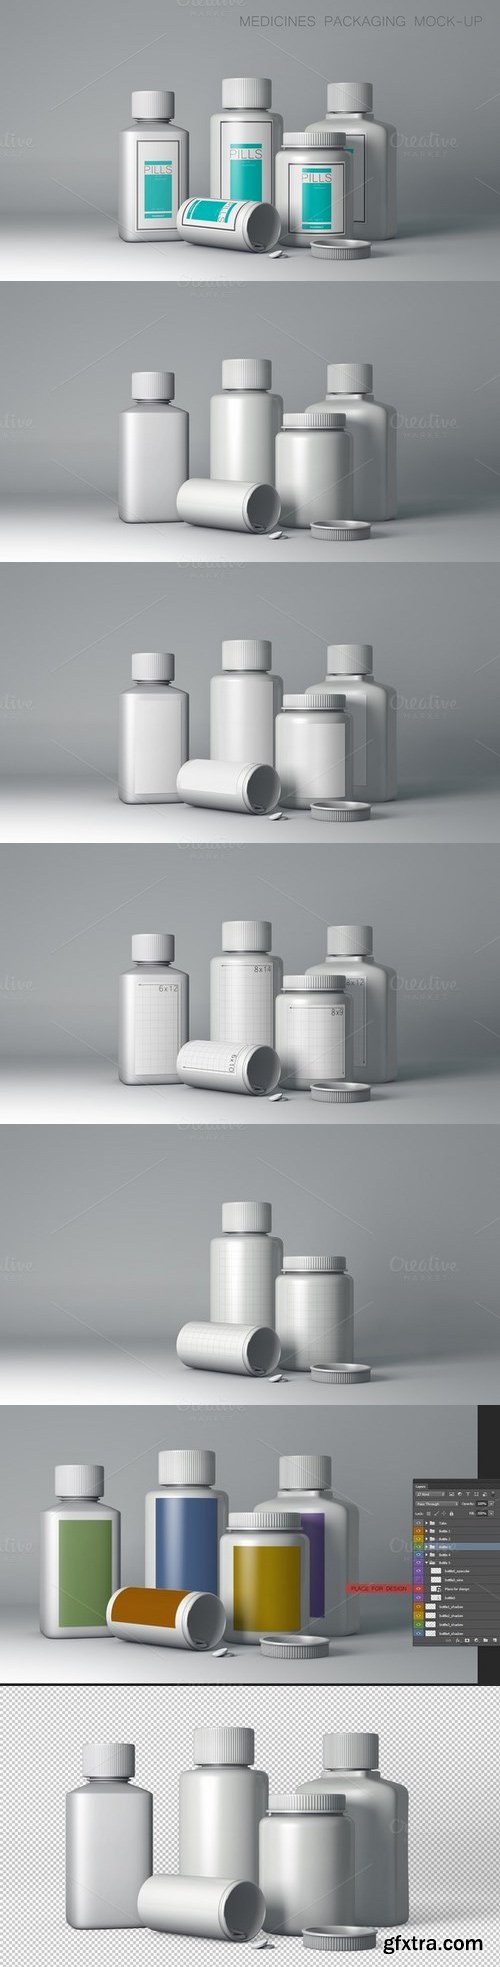 CM - Medicines Packaging Mock-Up 686494